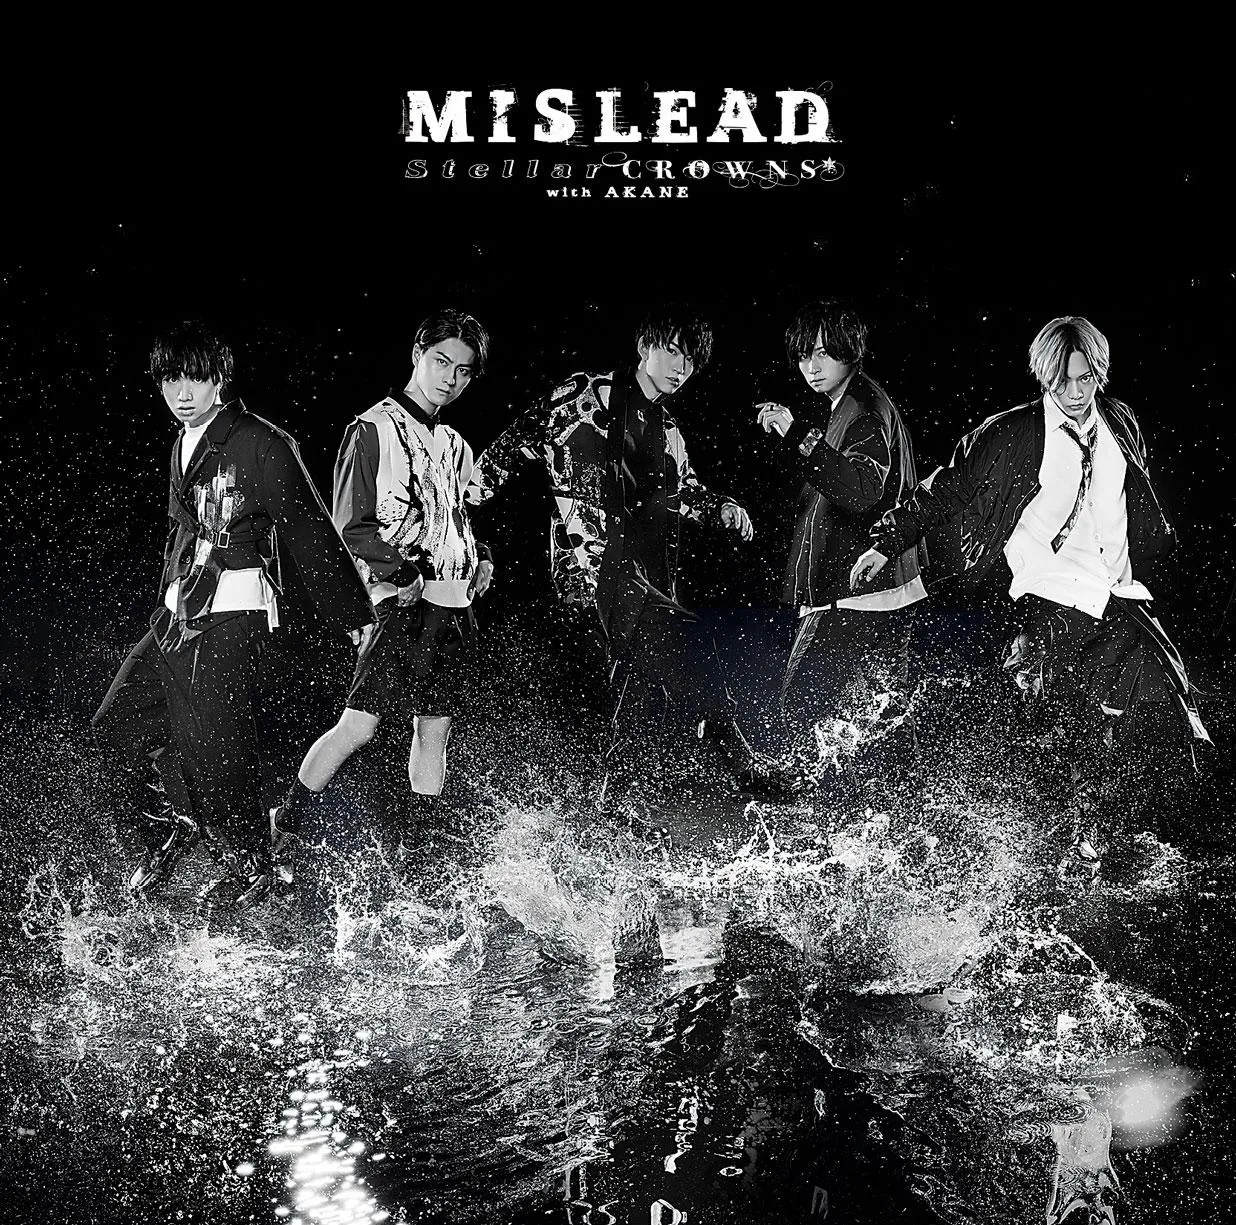 1月25日(水)にCDシングルの発売も決定した「MISLEAD」初回盤ジャケット